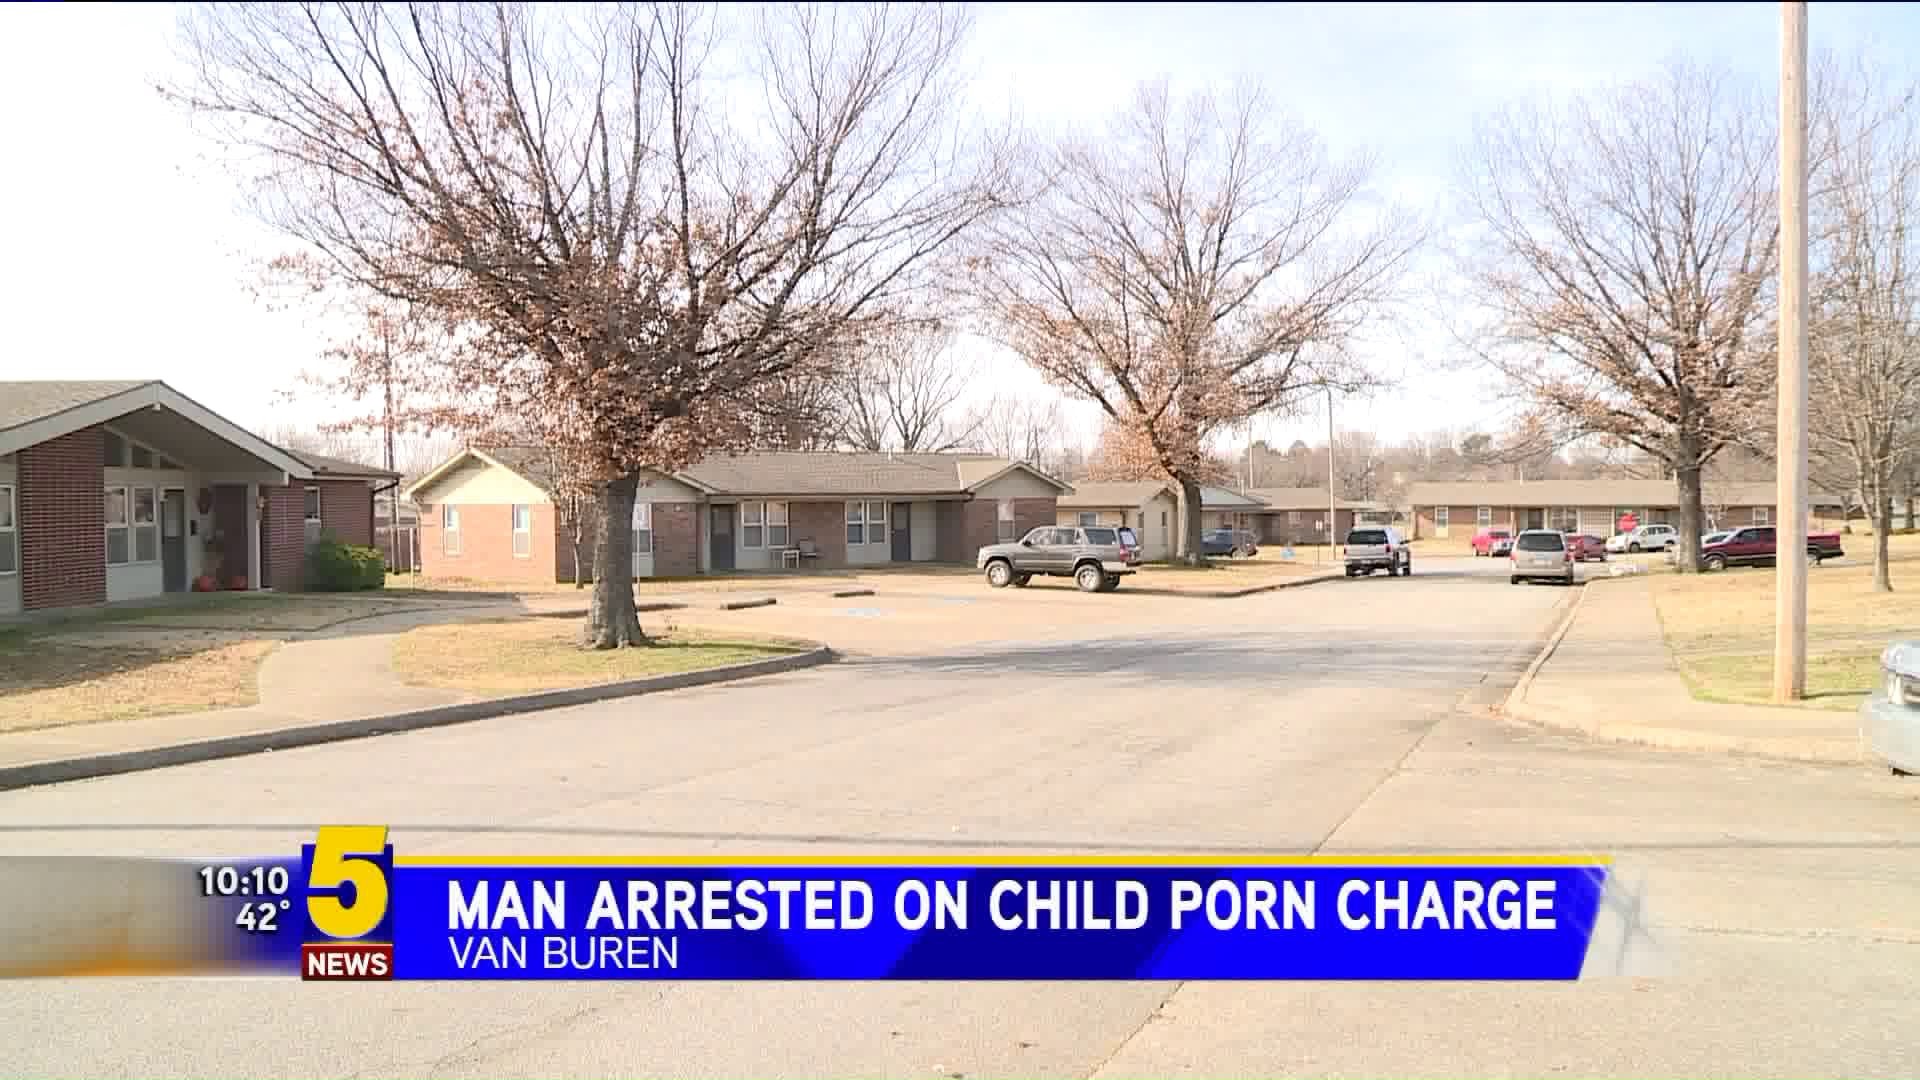 Van Buren Man arrested on child porn charge